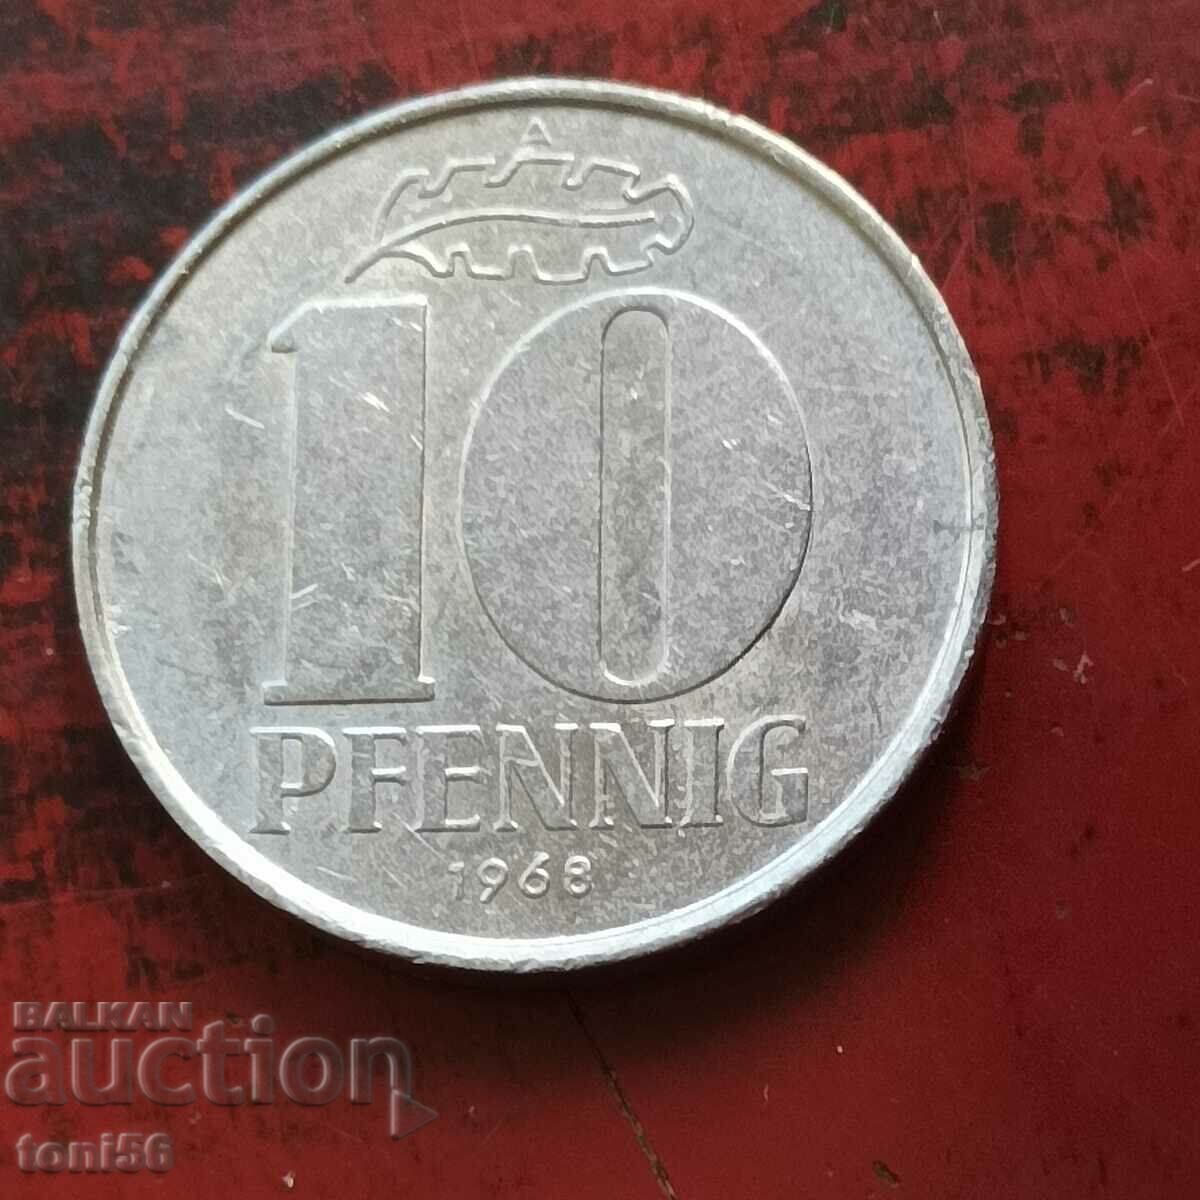 GDR 10 pfennig 1968 - quality